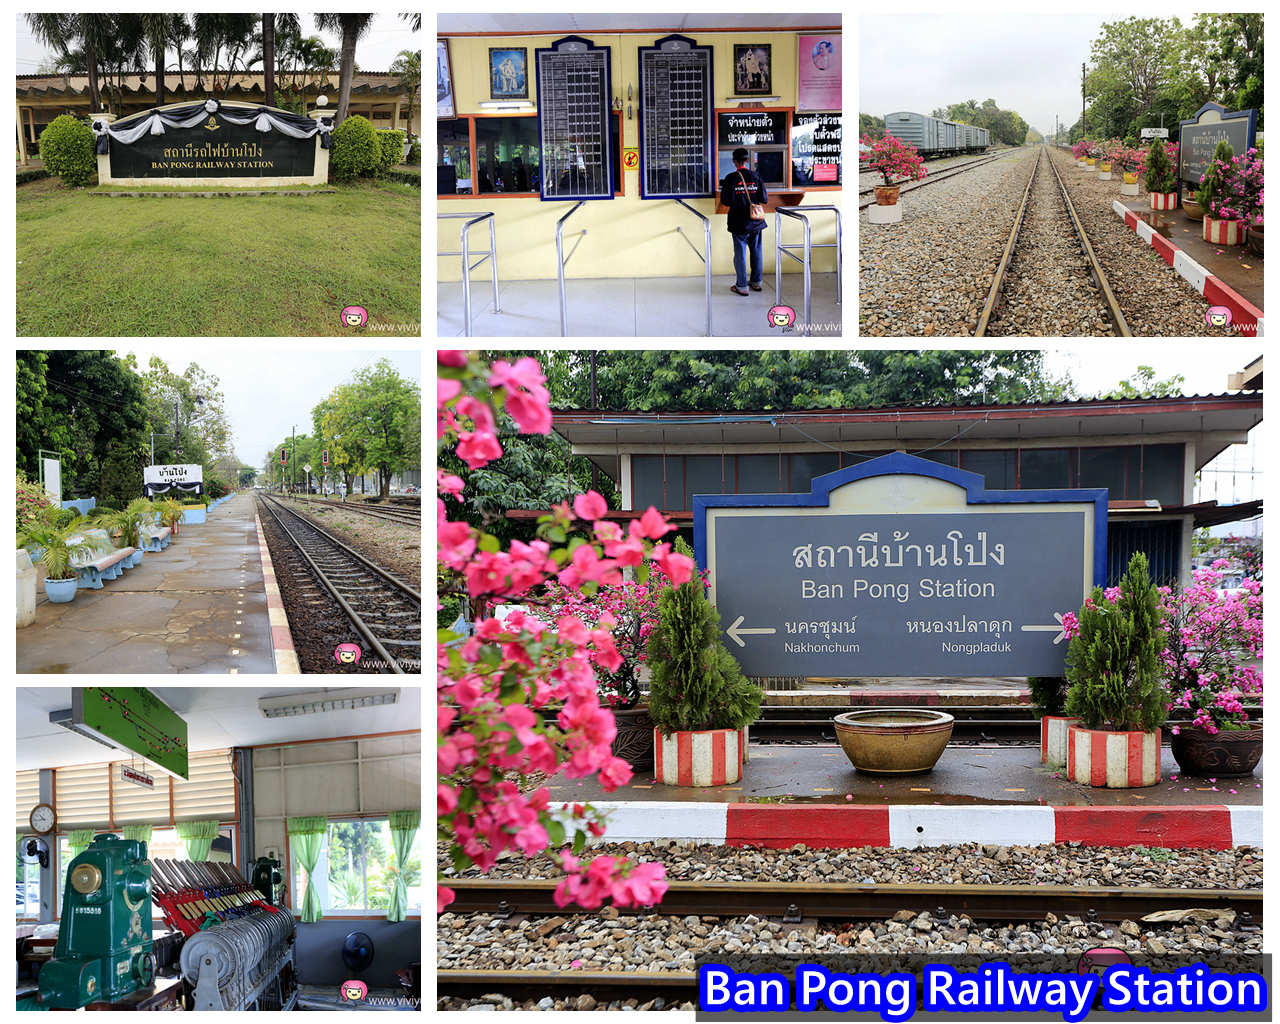 延伸閱讀：[泰國．景點]泰緬鐵路&死亡鐵路的起點．Ban Pong Railway Station班蓬火車站~Ratchaburi拉差汶里府